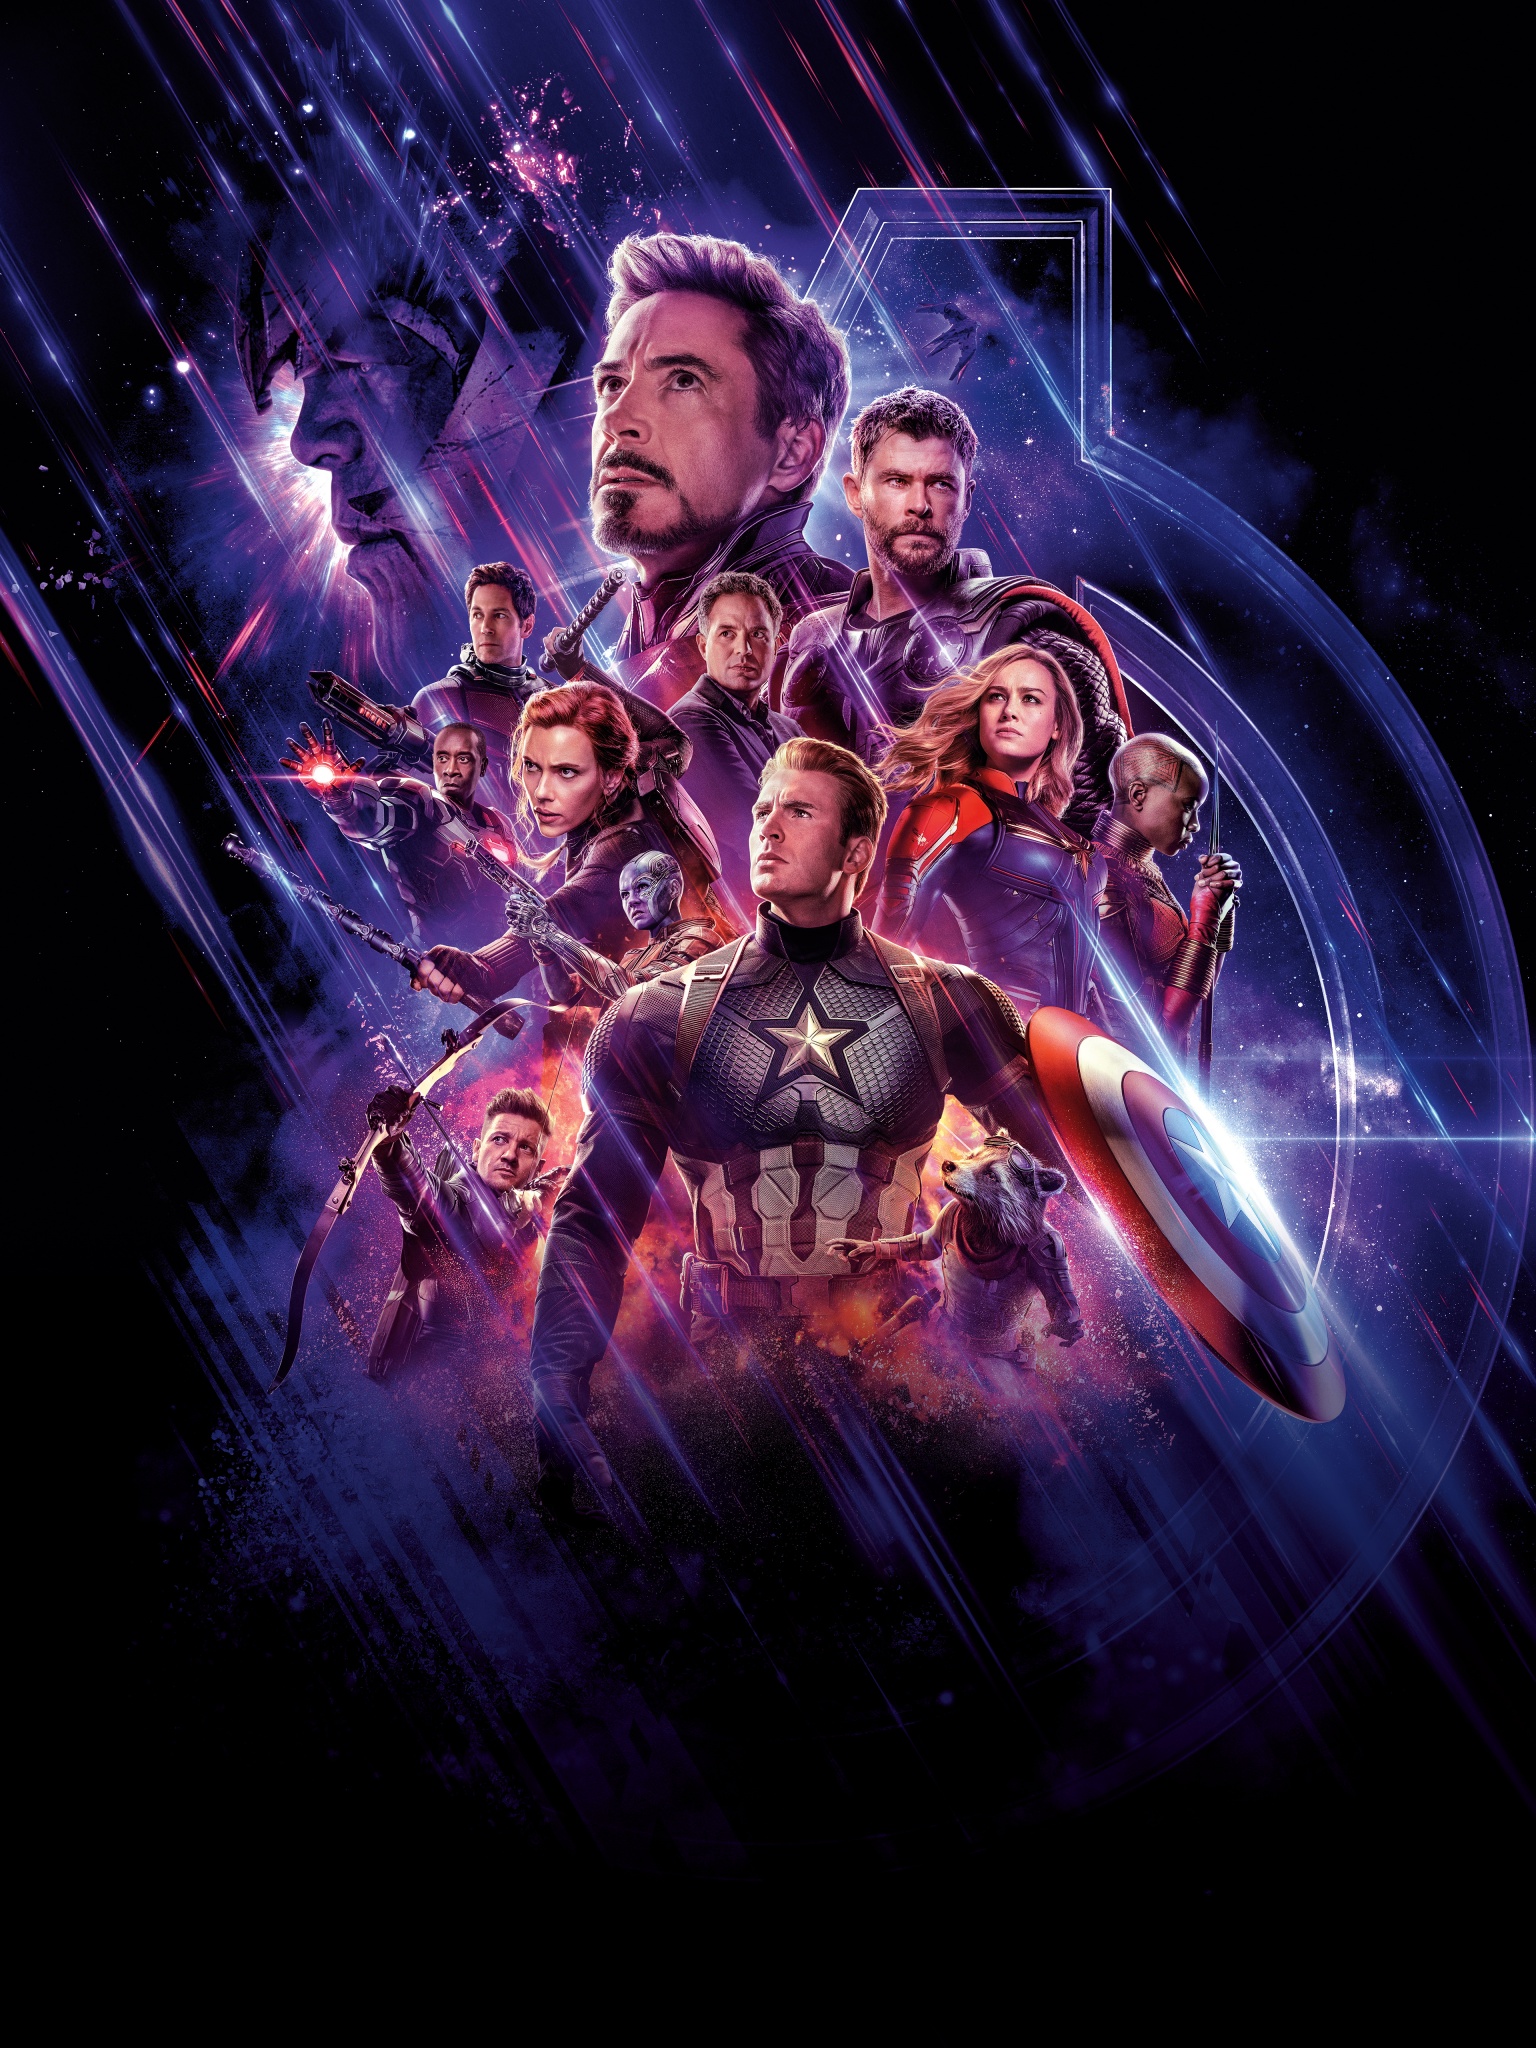 Avengers: Endgame Wallpaper 4K, Marvel Superheroes, Movies